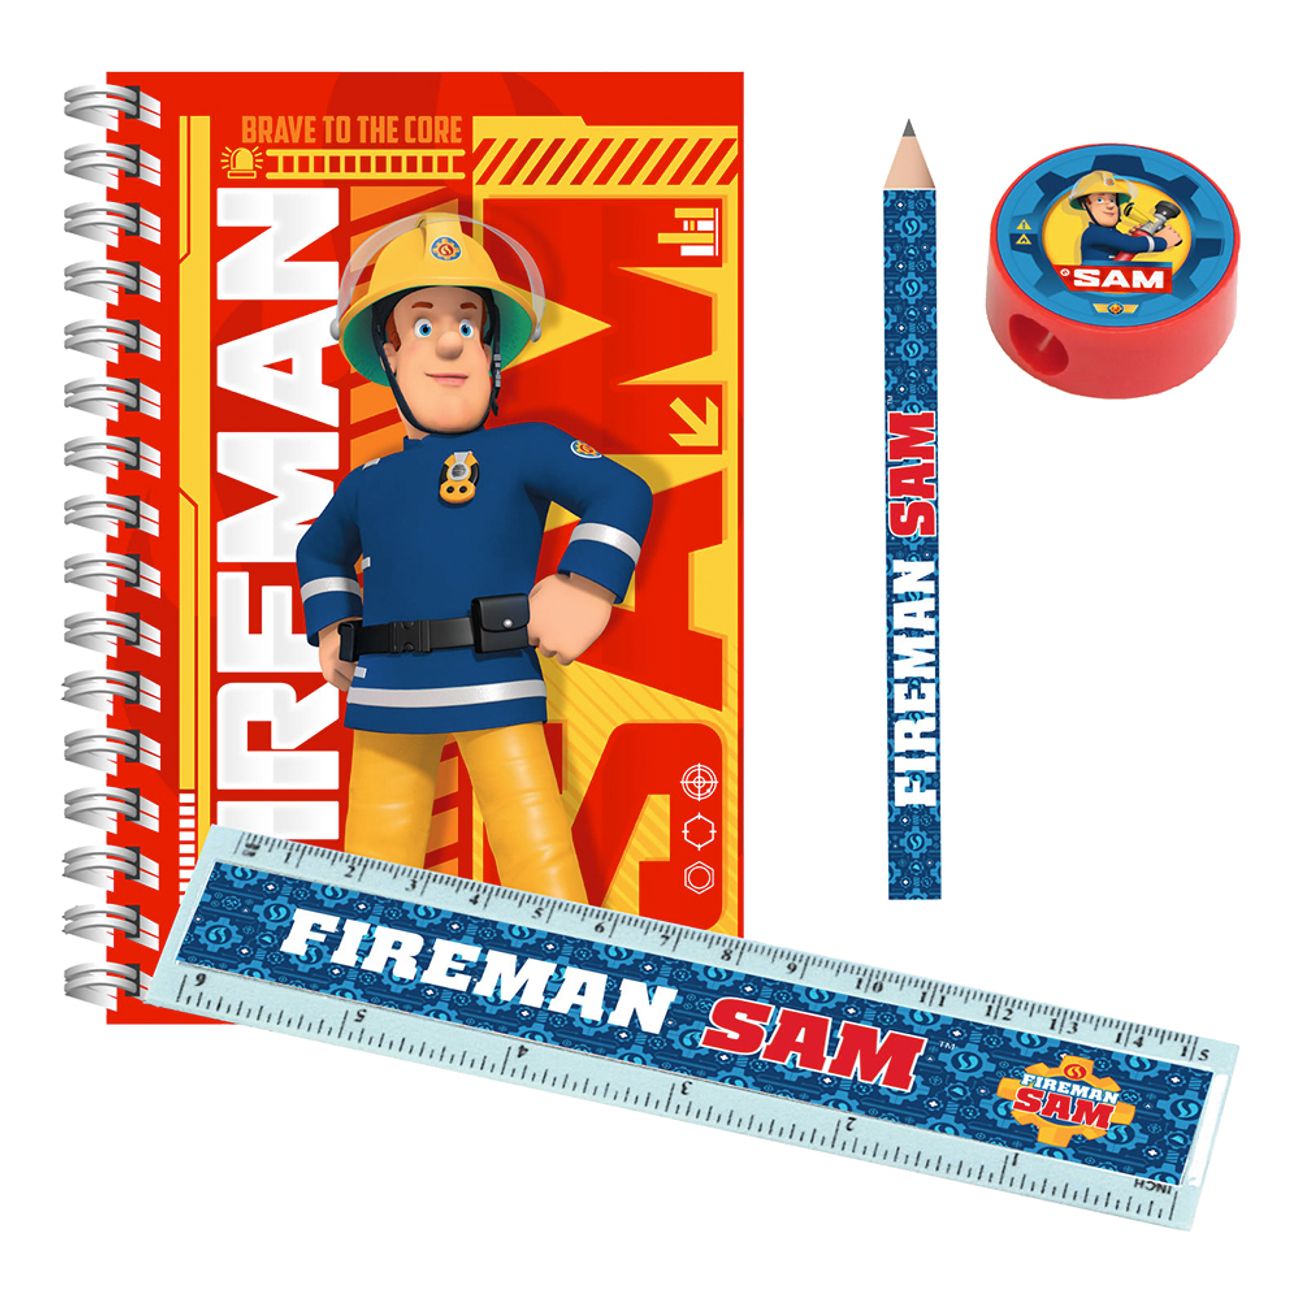 skolstart-brandman-sam-1